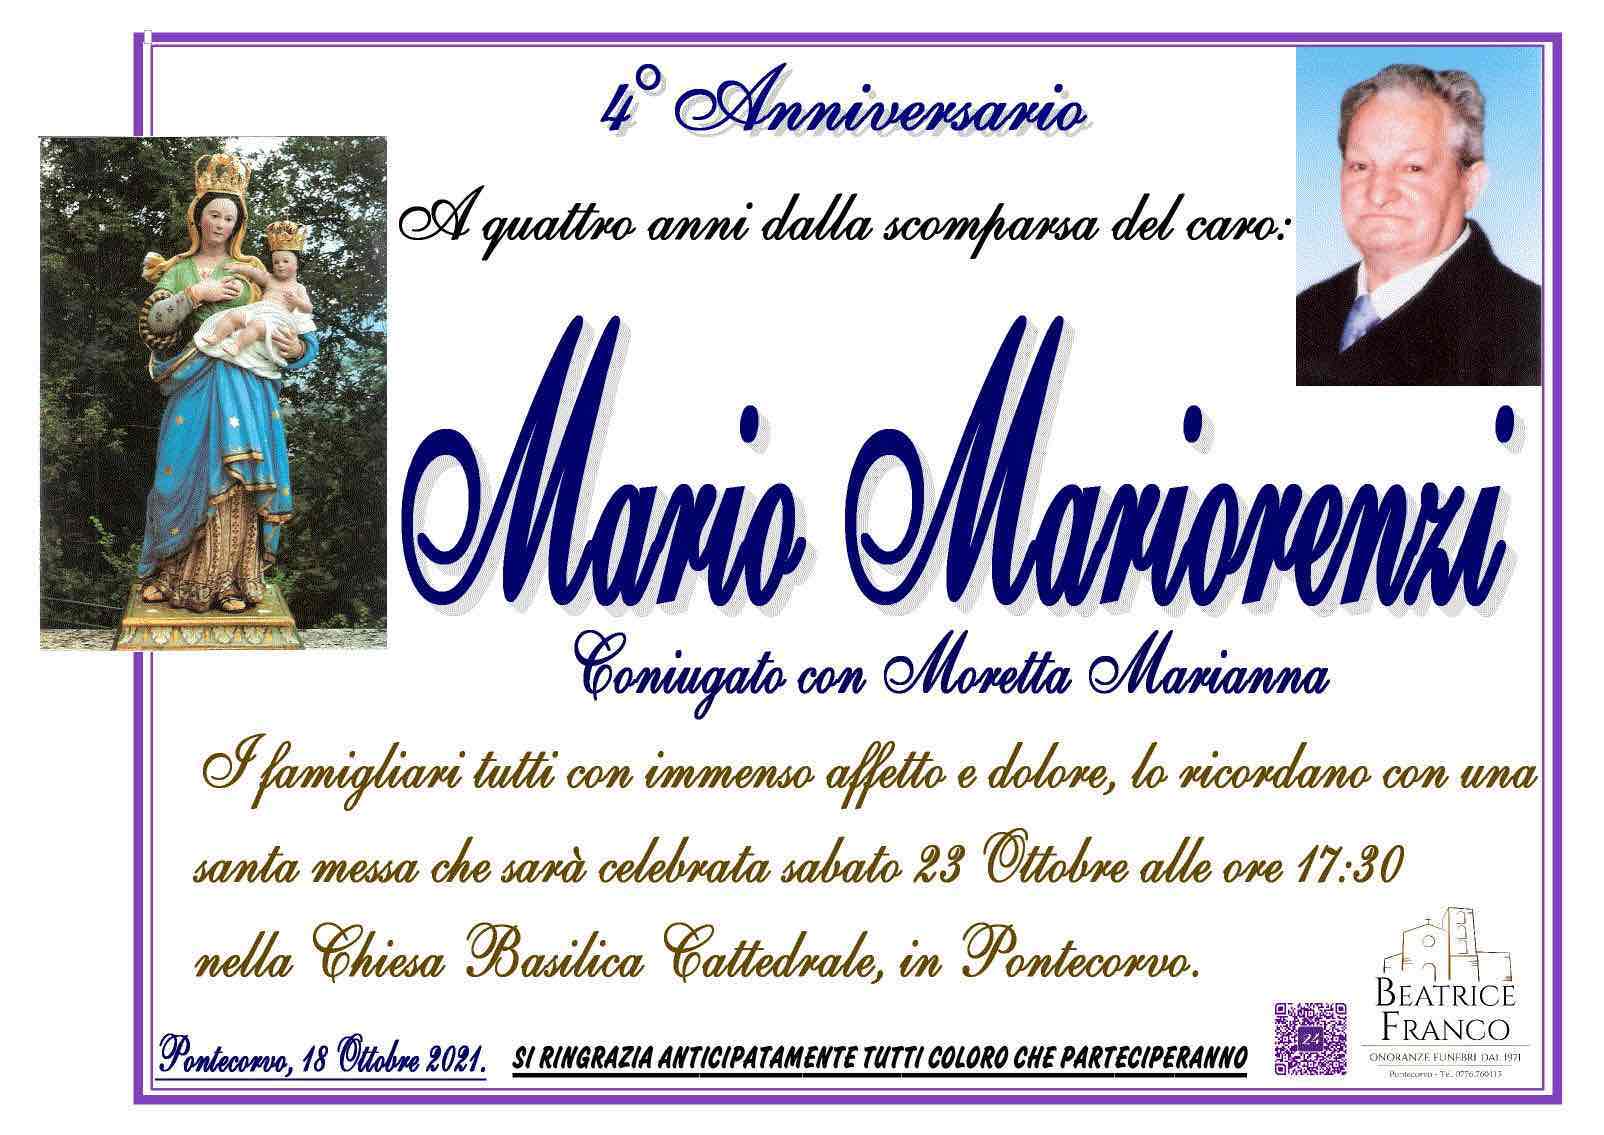 Mario Mariorenzi